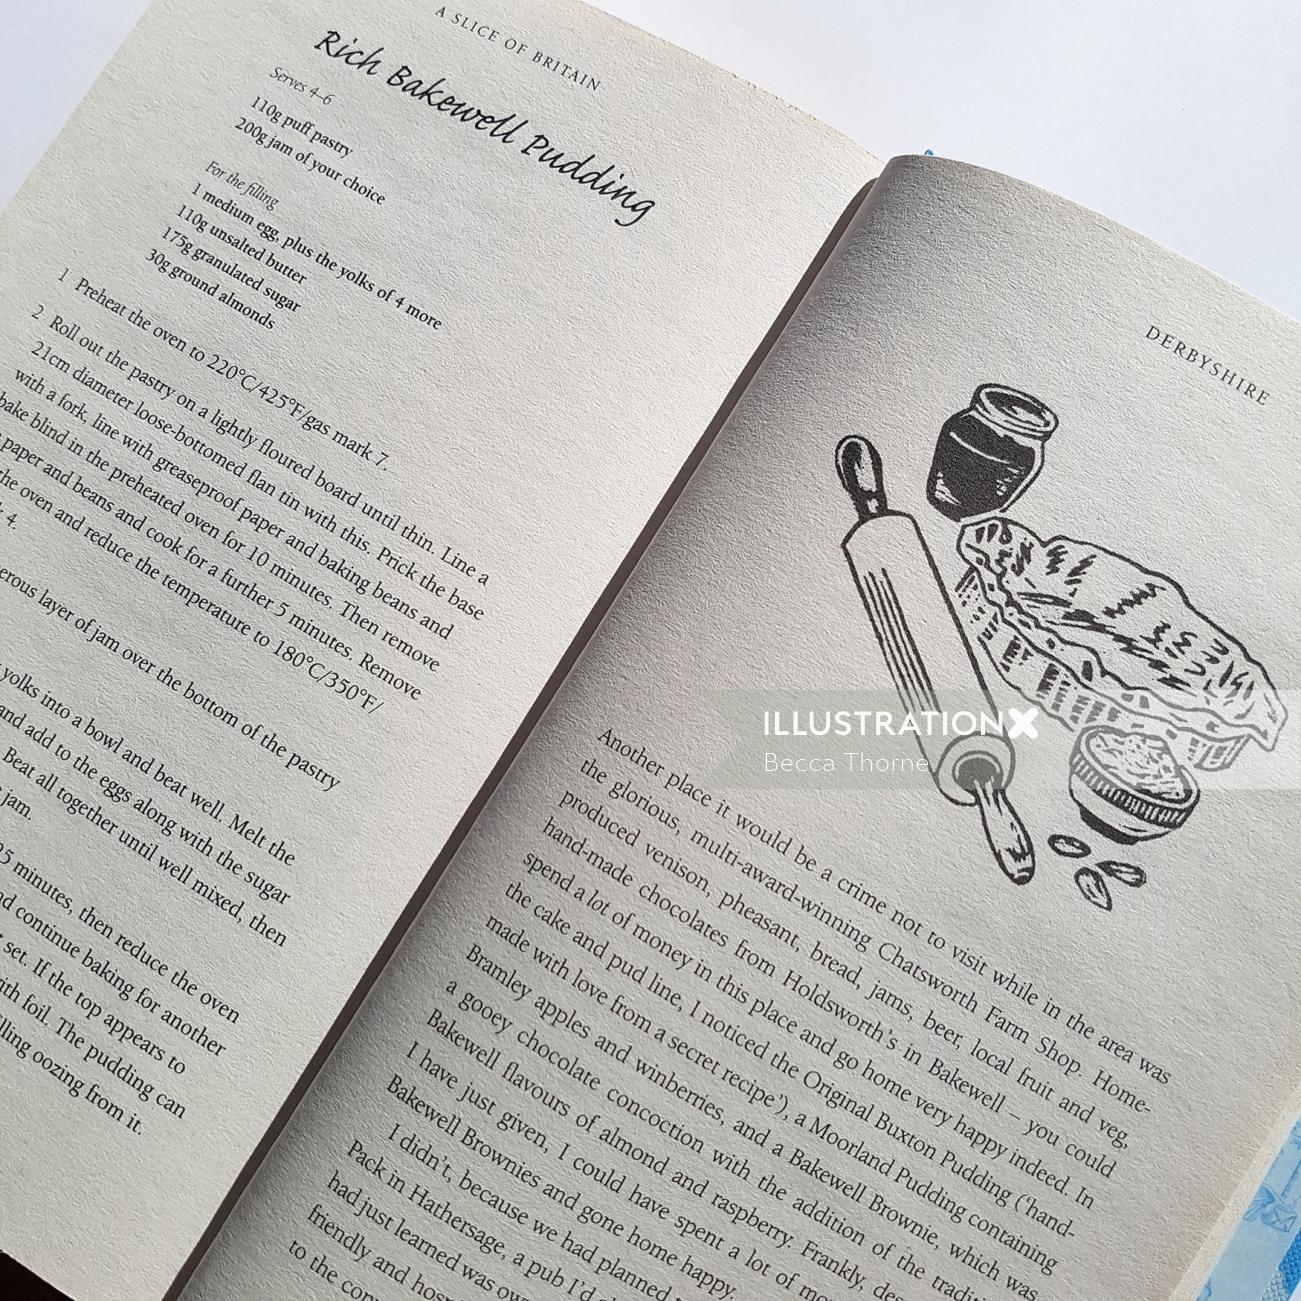 キャロライン・タガートの『A Slice of Britain』に掲載されているベイクウェル プディングのレシピの写真、リノカット スポット付き